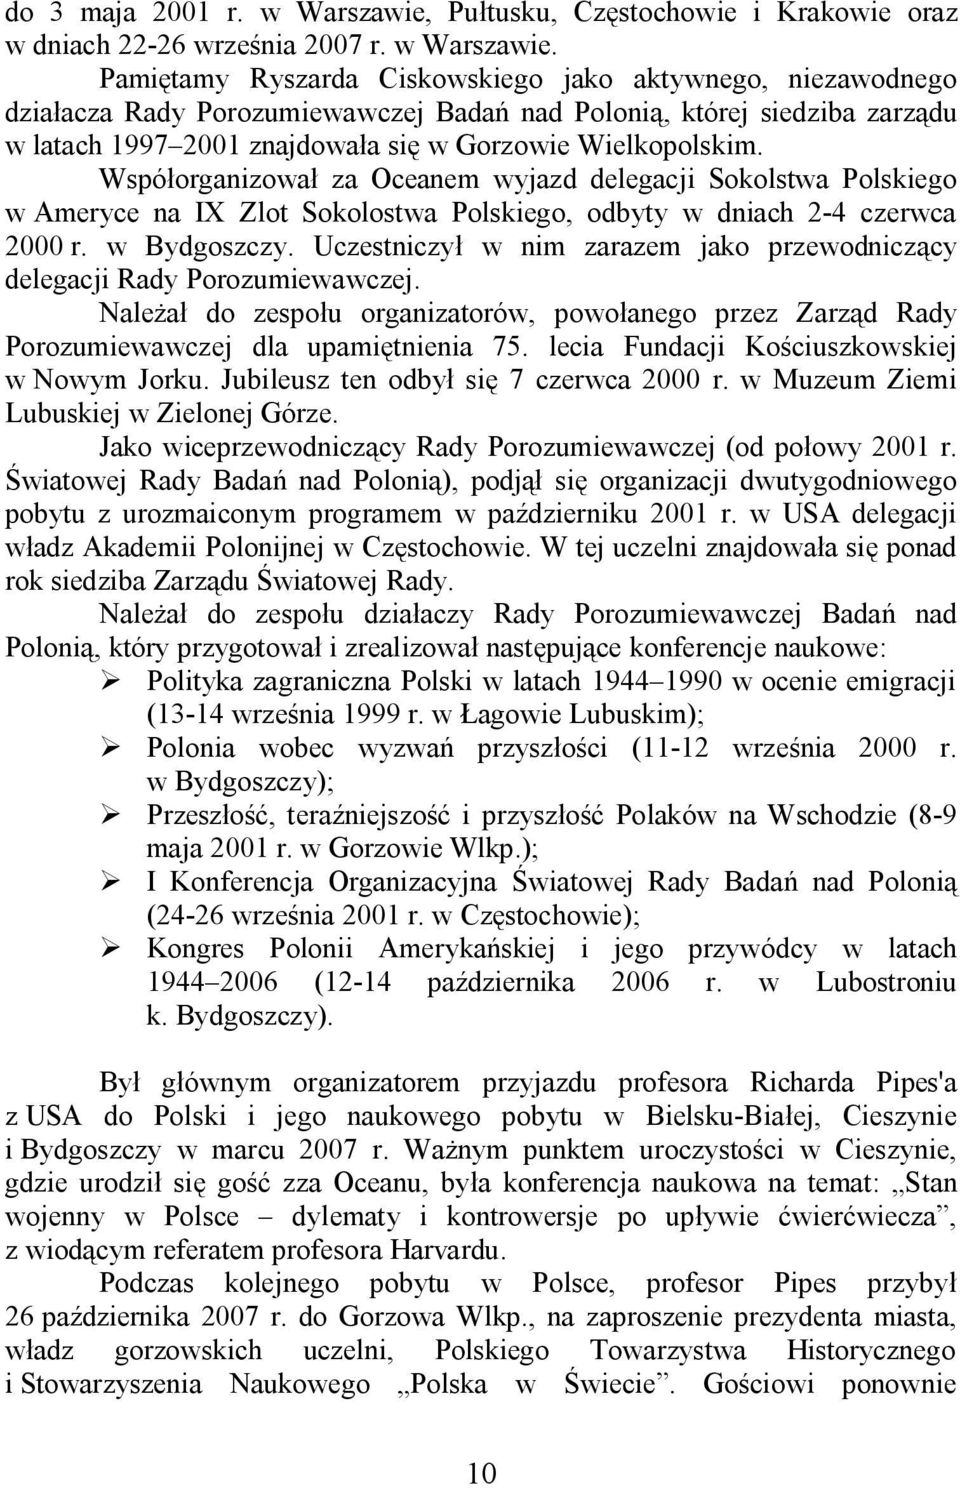 Pami tamy Ryszarda Ciskowskiego jako aktywnego, niezawodnego dzia acza Rady Porozumiewawczej Bada nad Poloni, której siedziba zarz du w latach 1997 2001 znajdowa a si w Gorzowie Wielkopolskim.